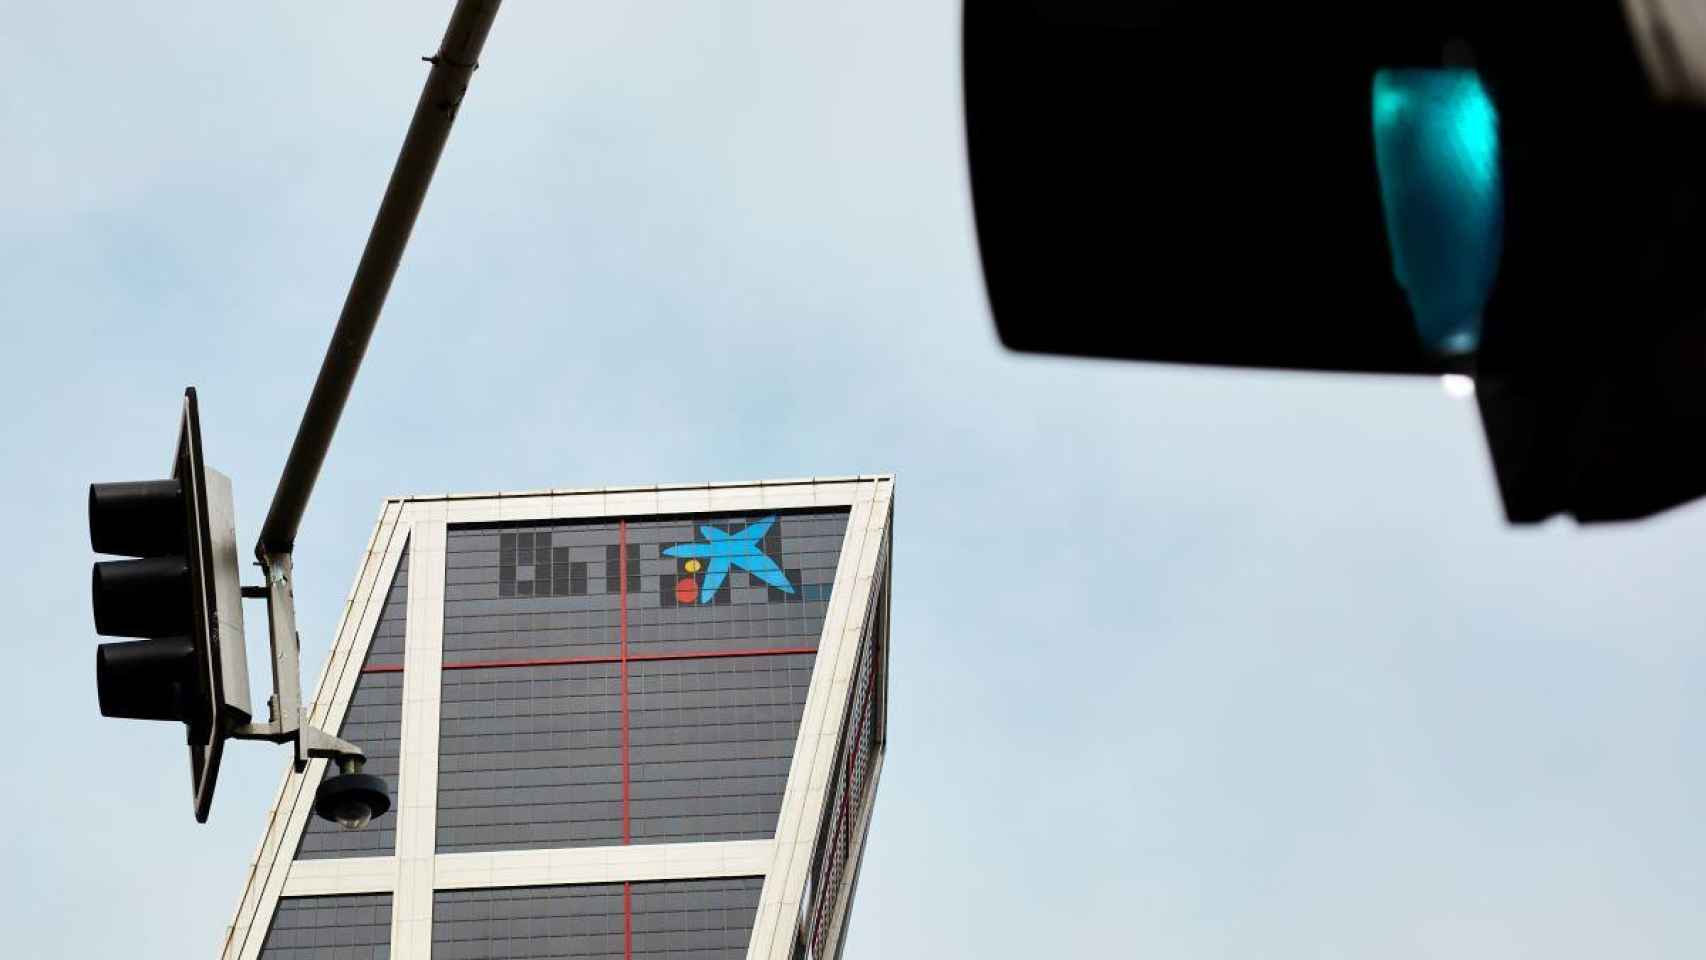 Logo de Caixabank en la torre KIO, hasta ahora sede de Bankia / EP